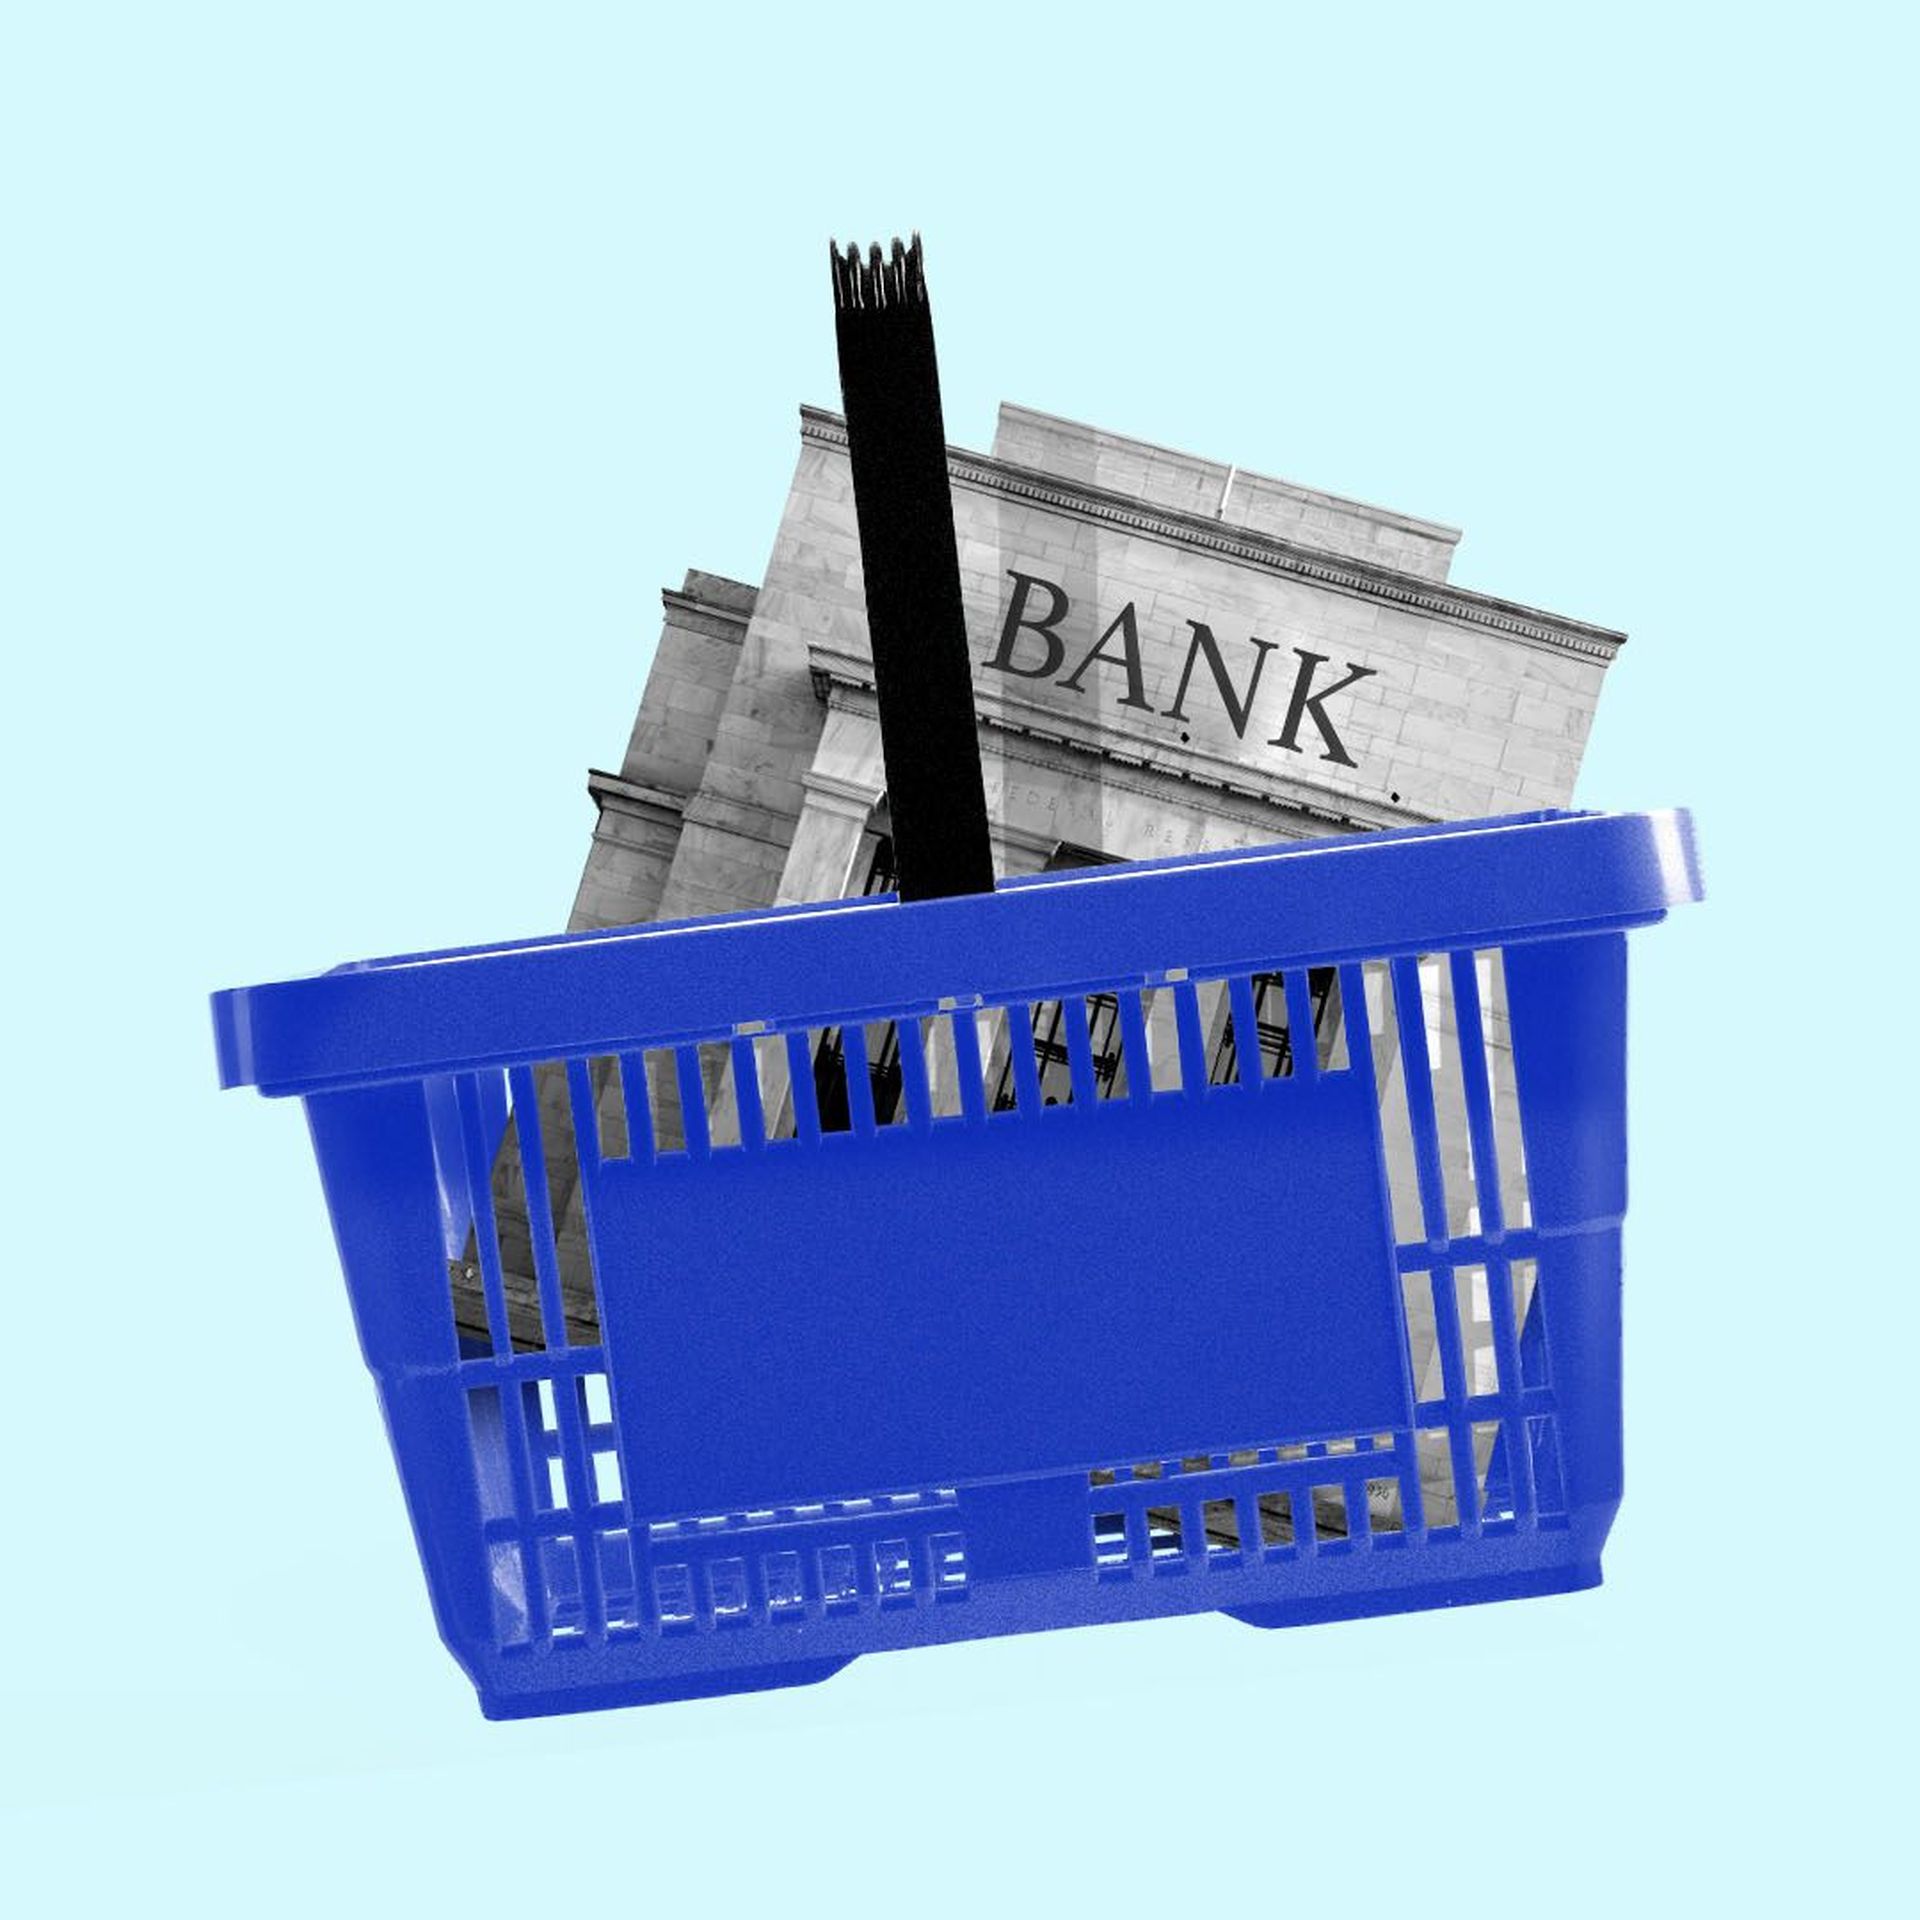 Illustration of a supermarket basket with a bank inside.